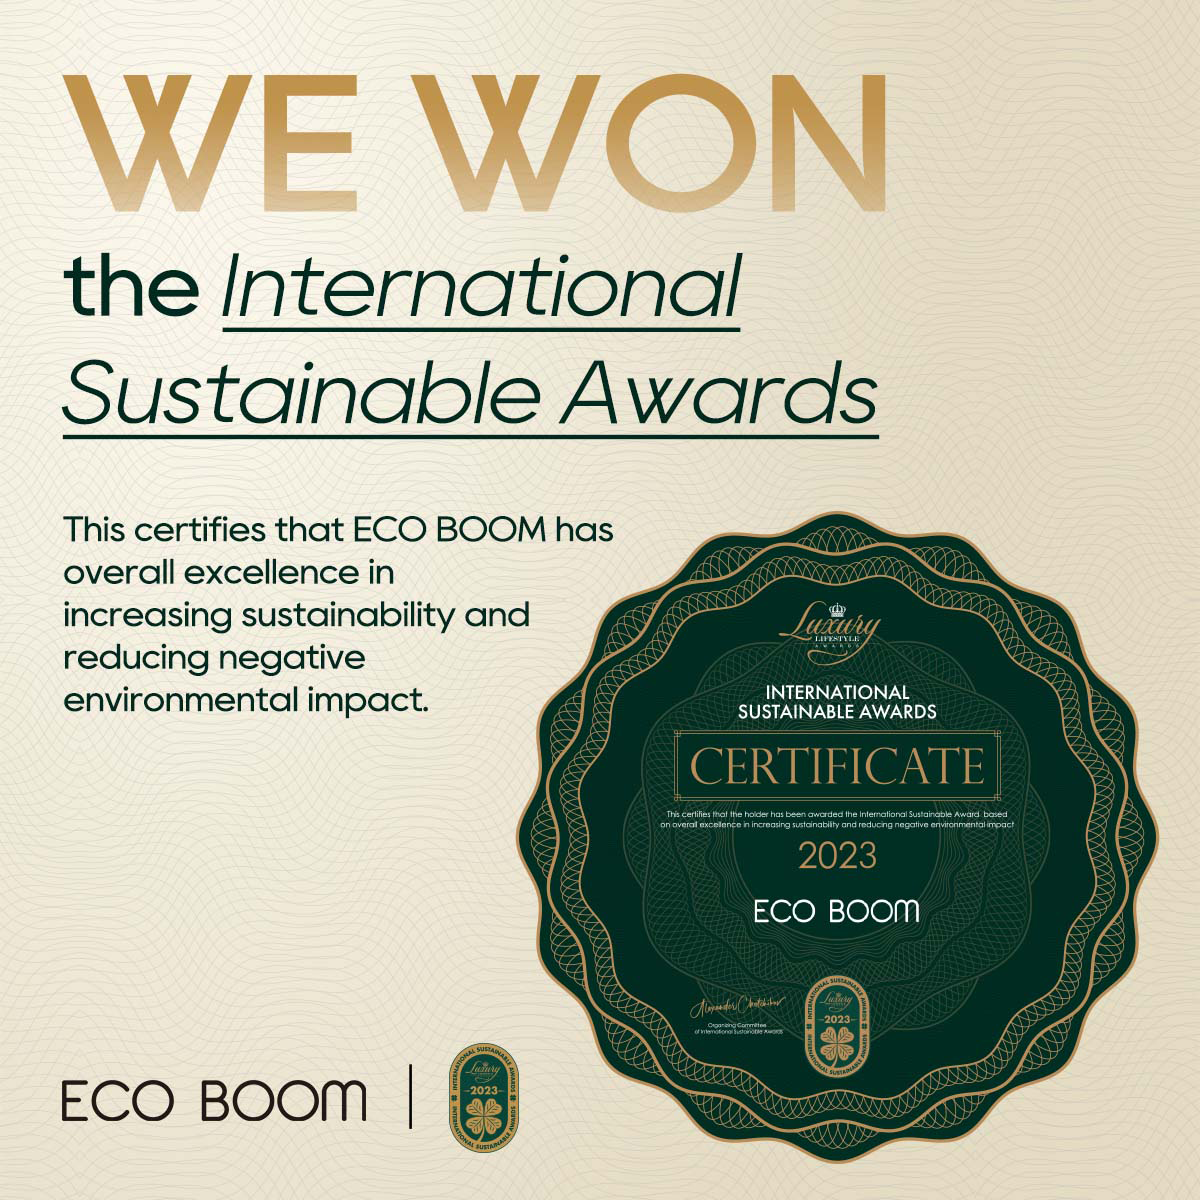 We won the International Sustainable Award